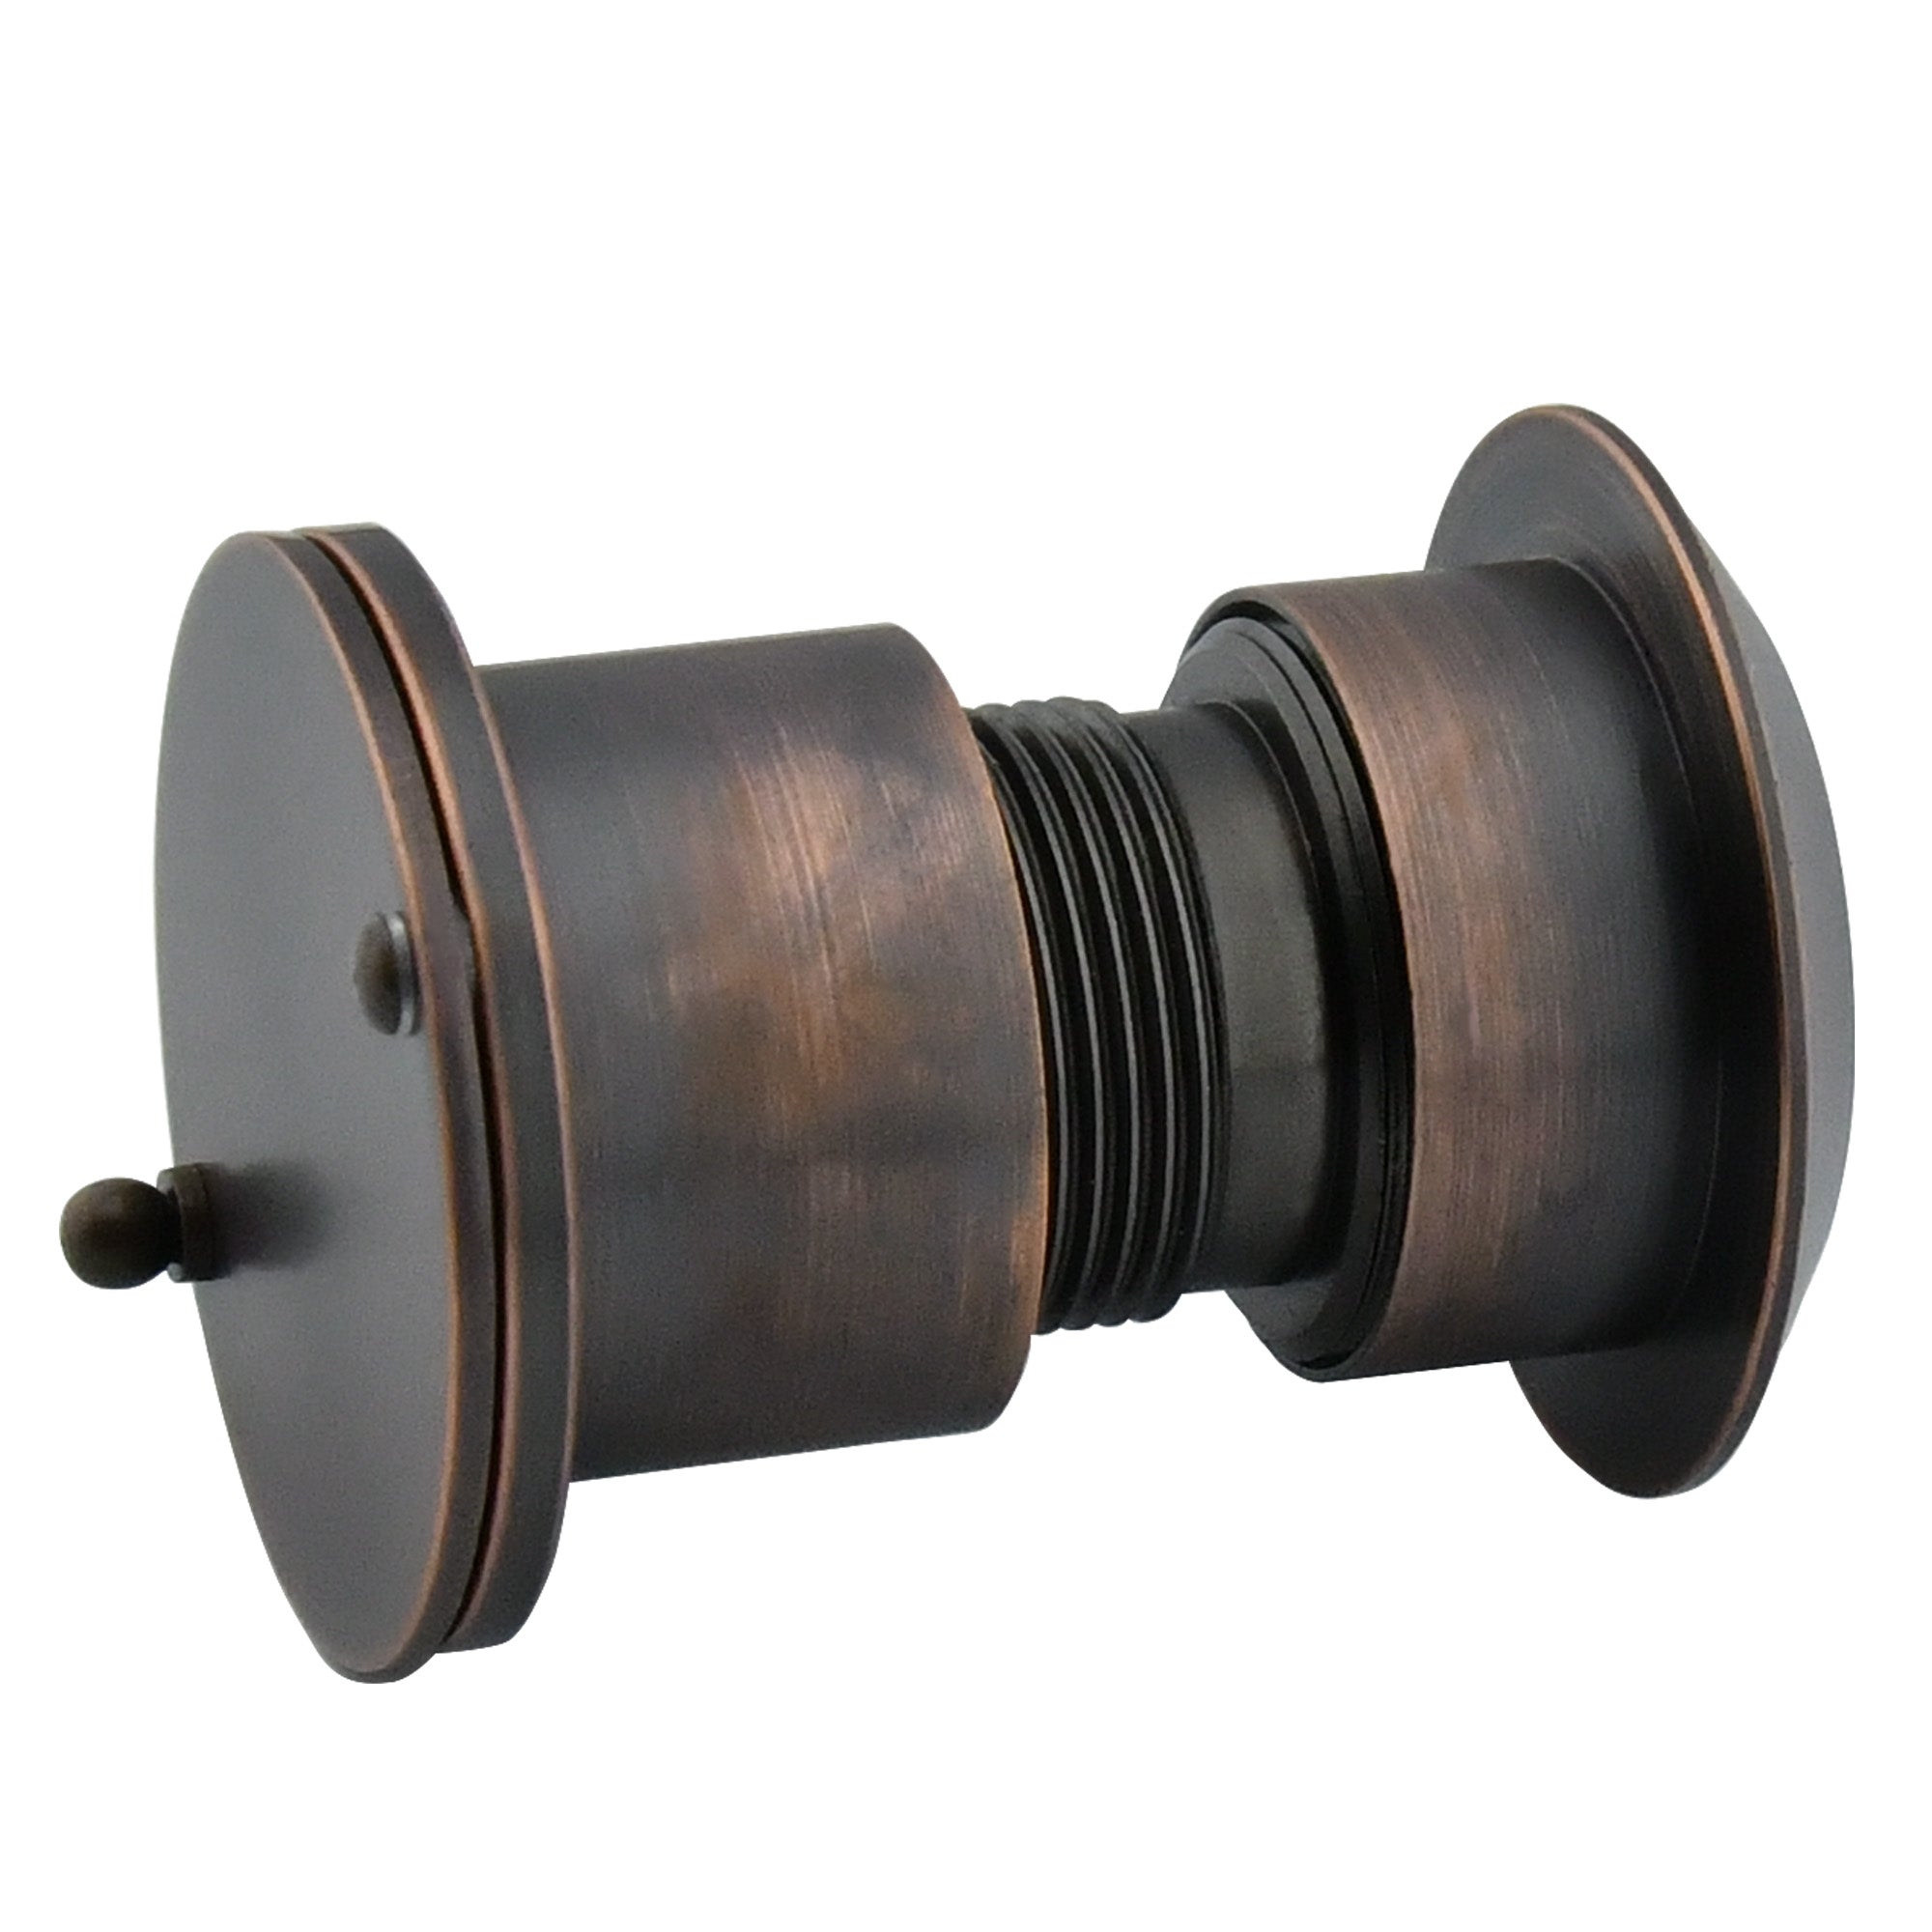 Solid Brass Security Peek Peepholes for Front Door - Oil Rubbed Bronze